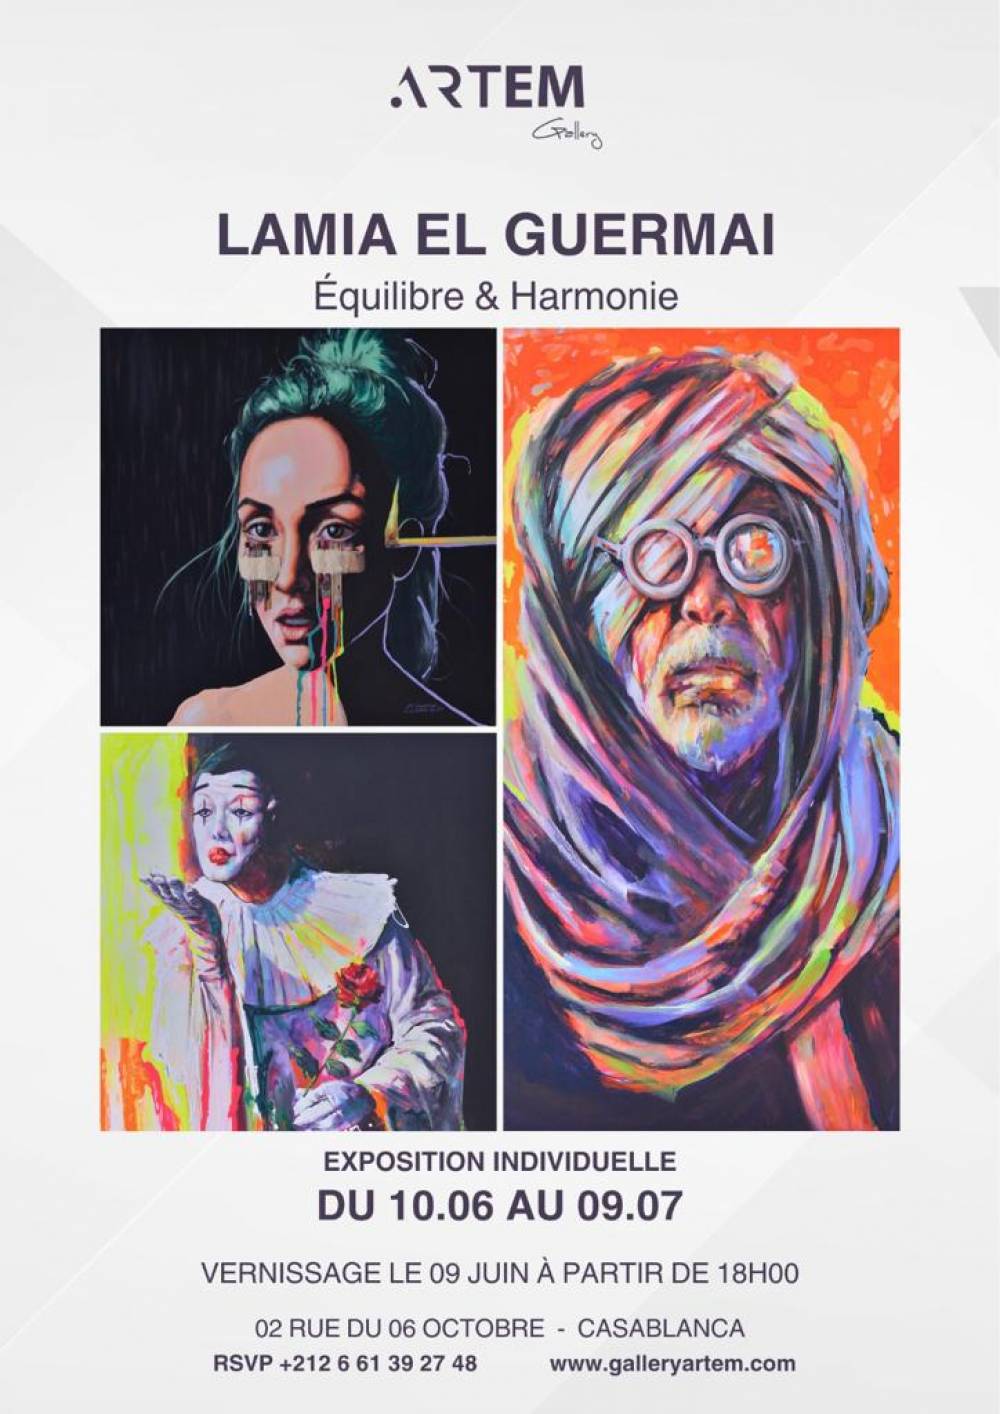 ARTEM Gallery annonce une exposition individuelle de l’artiste Lamia El Guermai